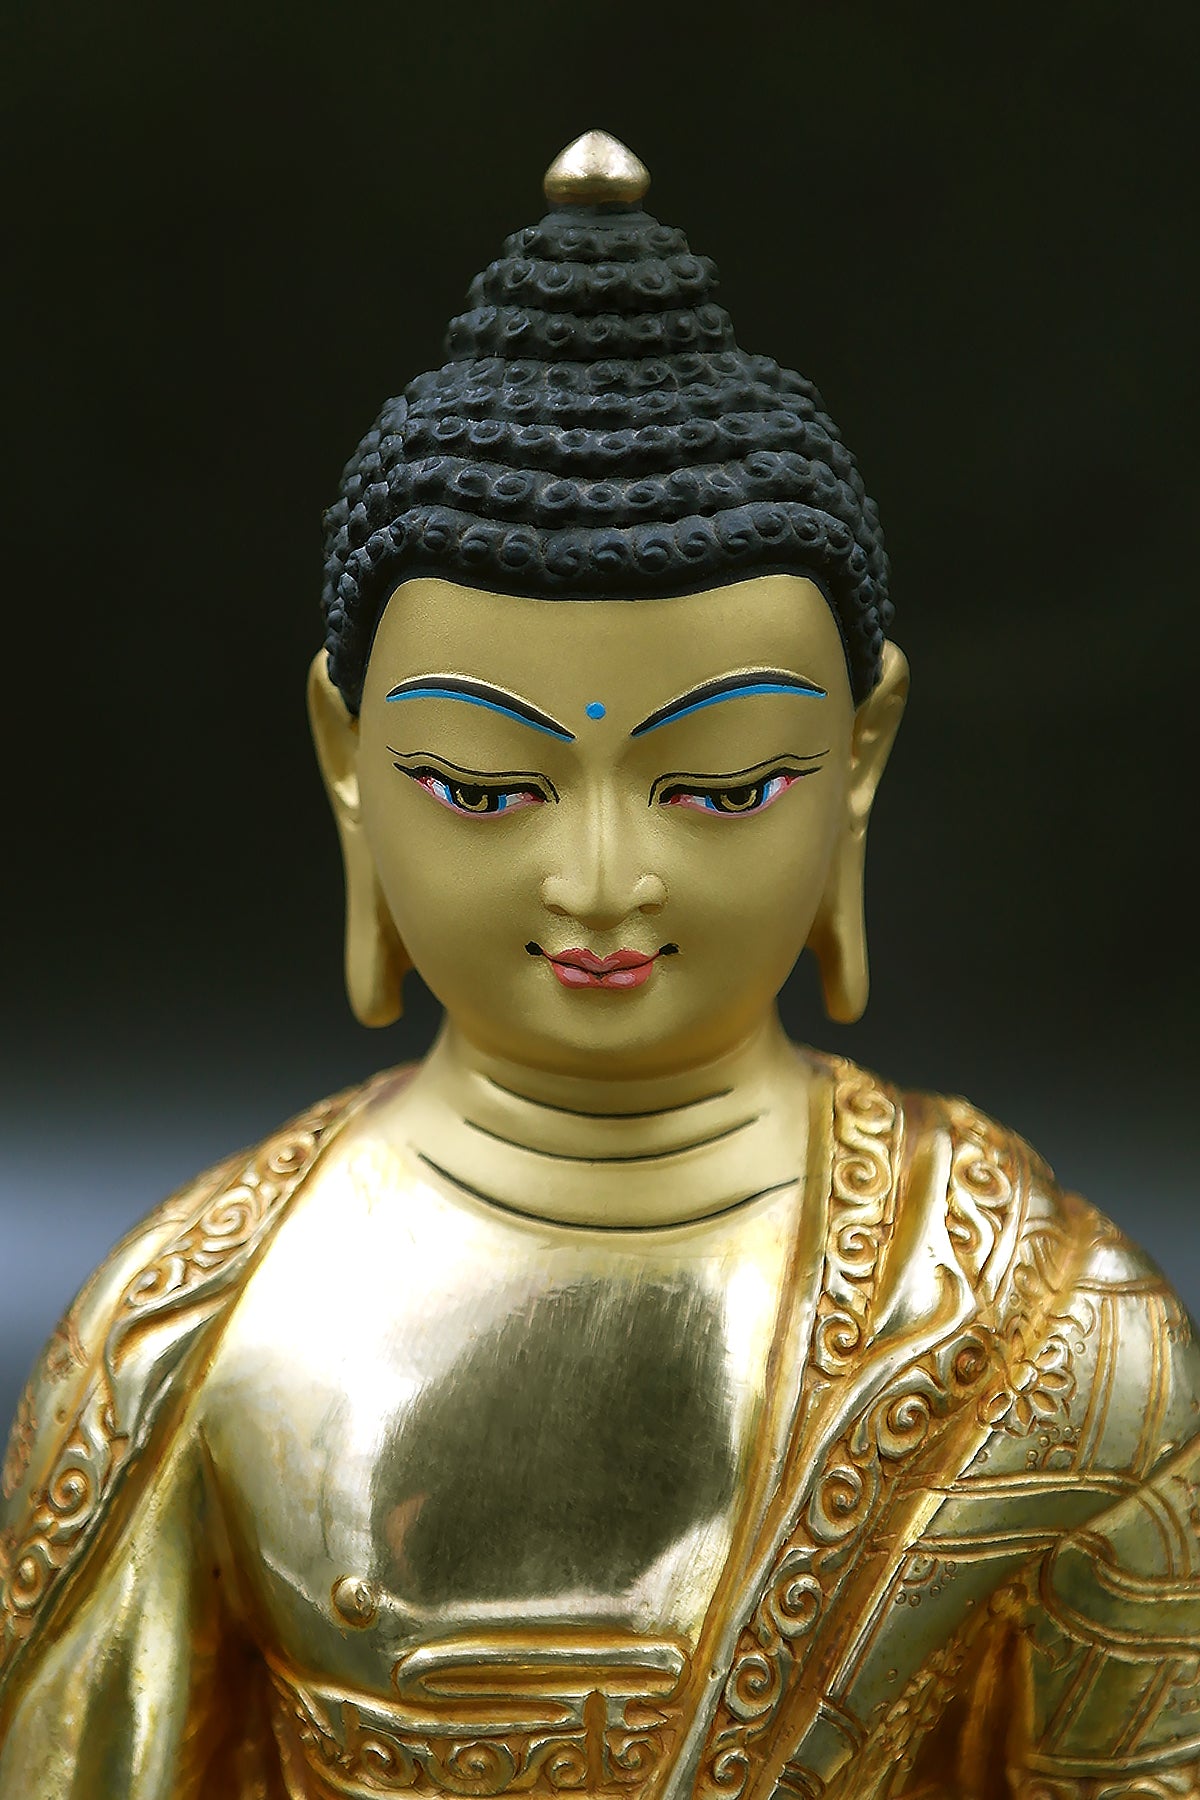 Hand carved Shakyamuni Buddha Statue from Nepal 7"